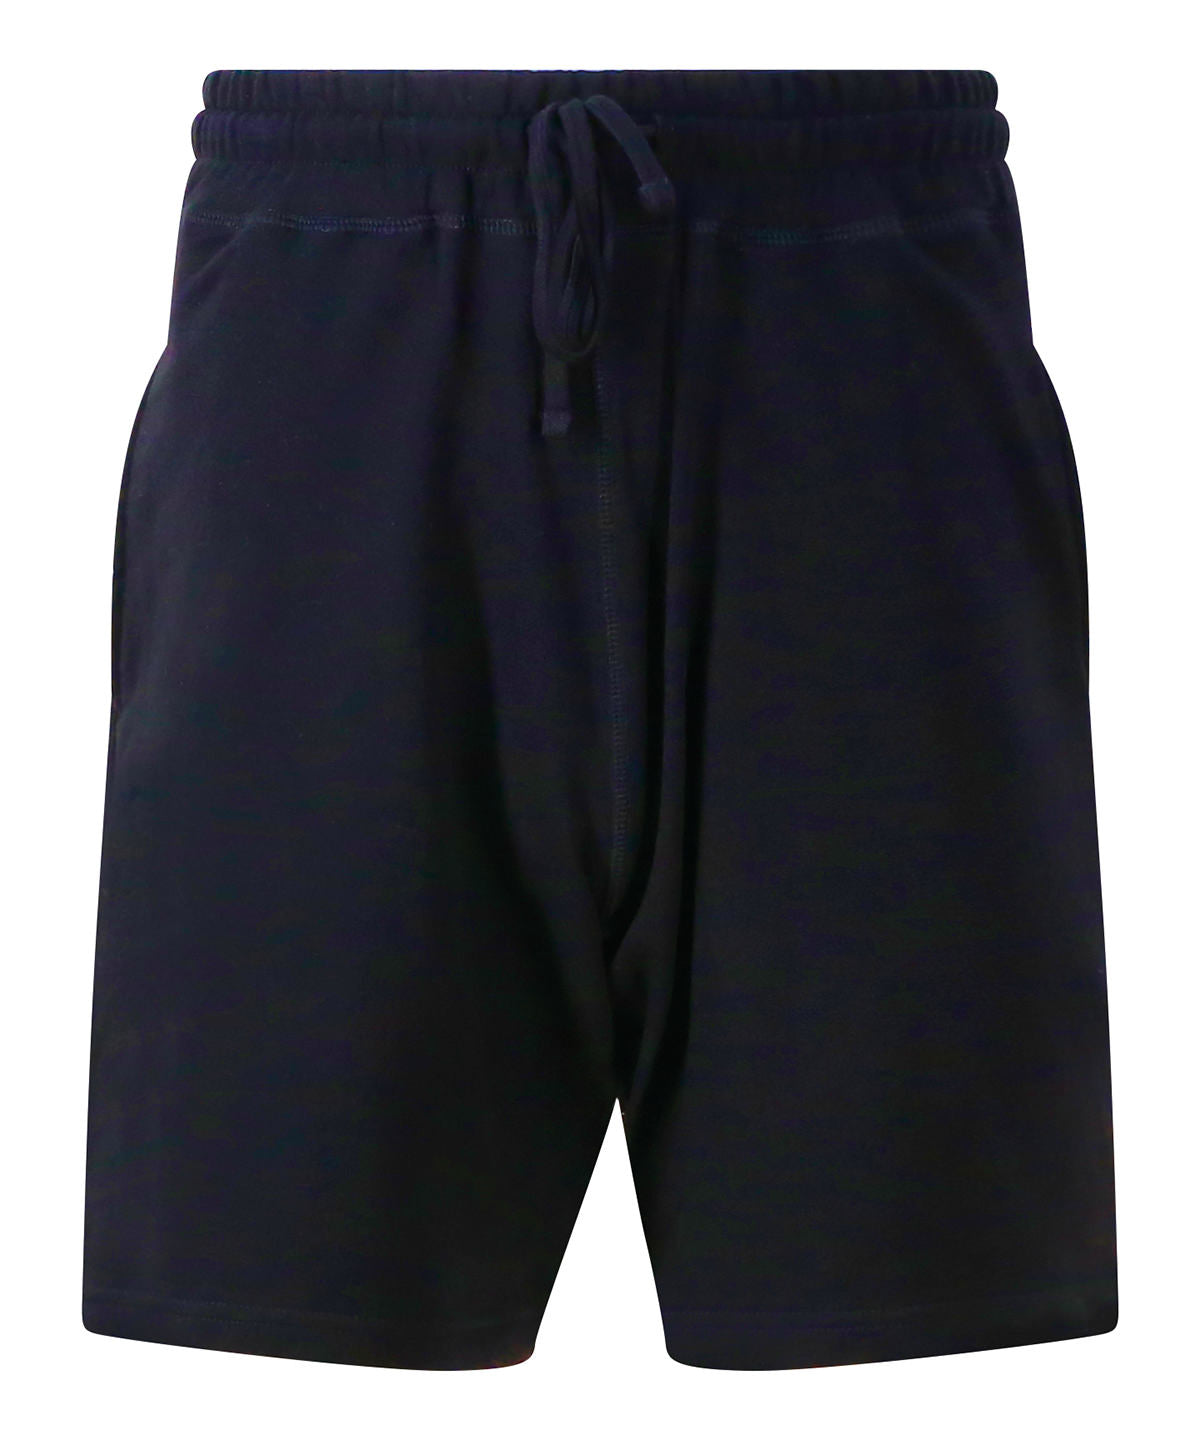 Personalised Shorts - Navy AWDis Just Cool Cool jog shorts